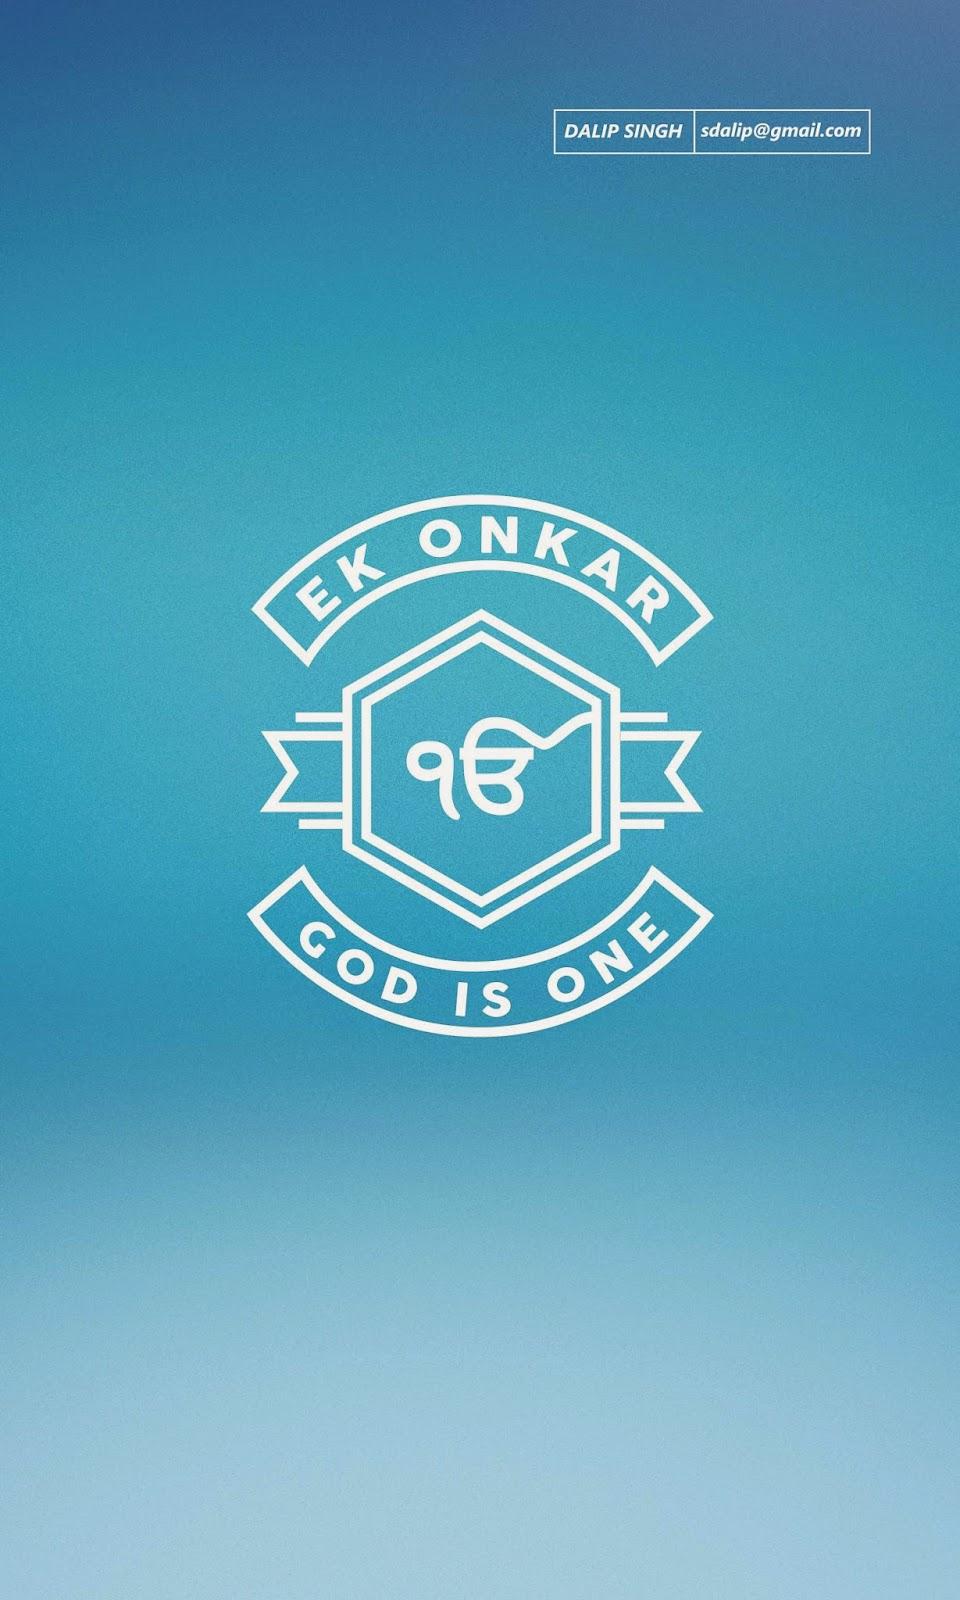 Ek Onkar Onkar God Is One, HD Wallpaper & background